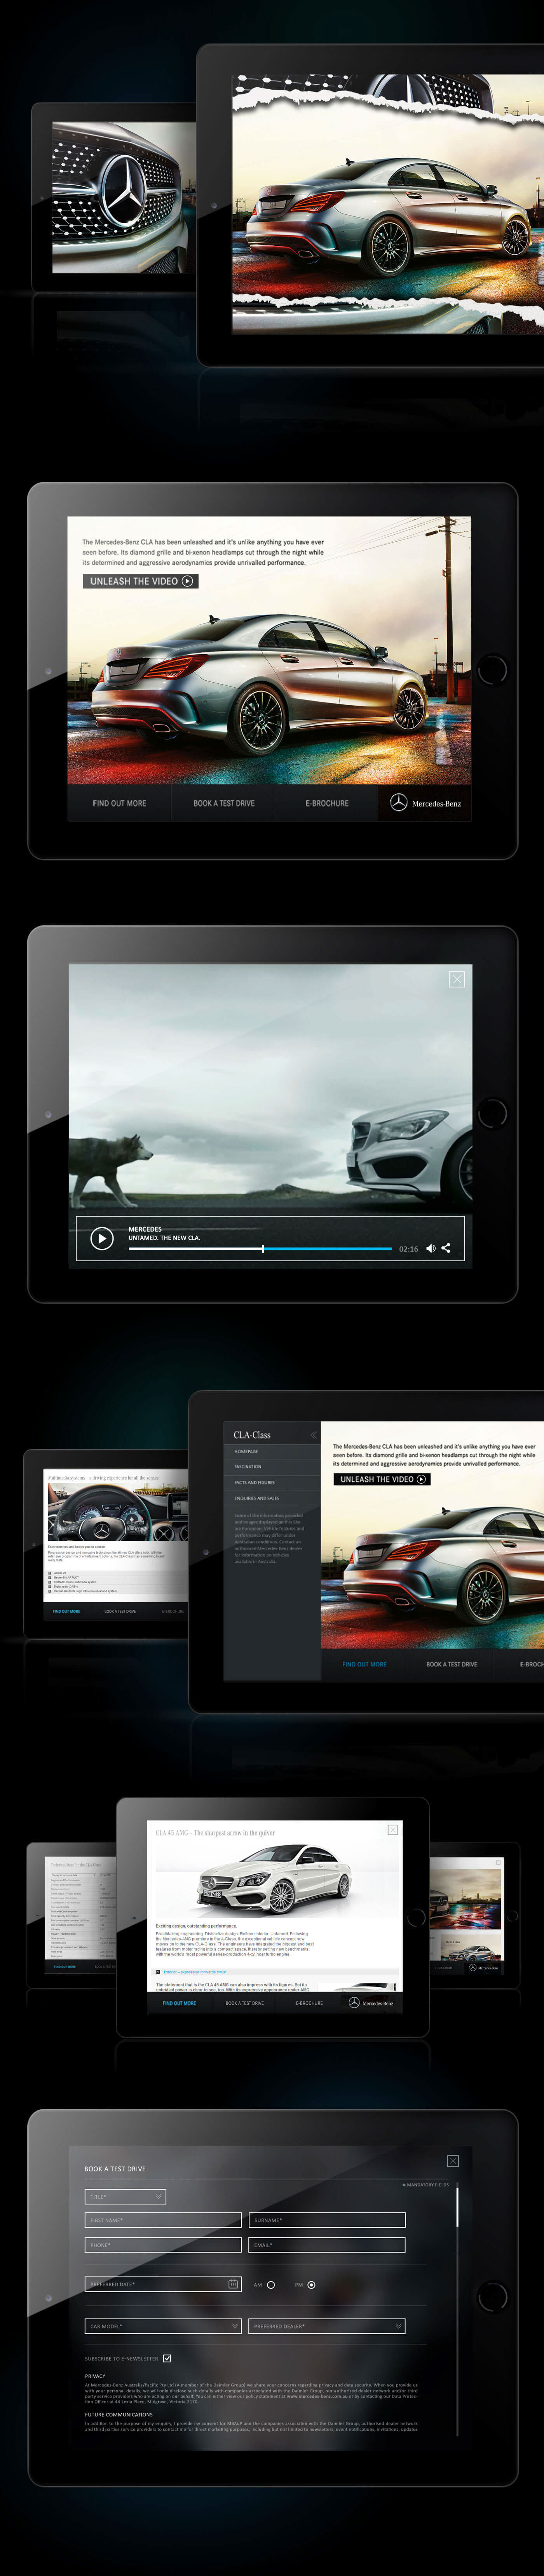 mercedes cla untamed app design mobile tablet